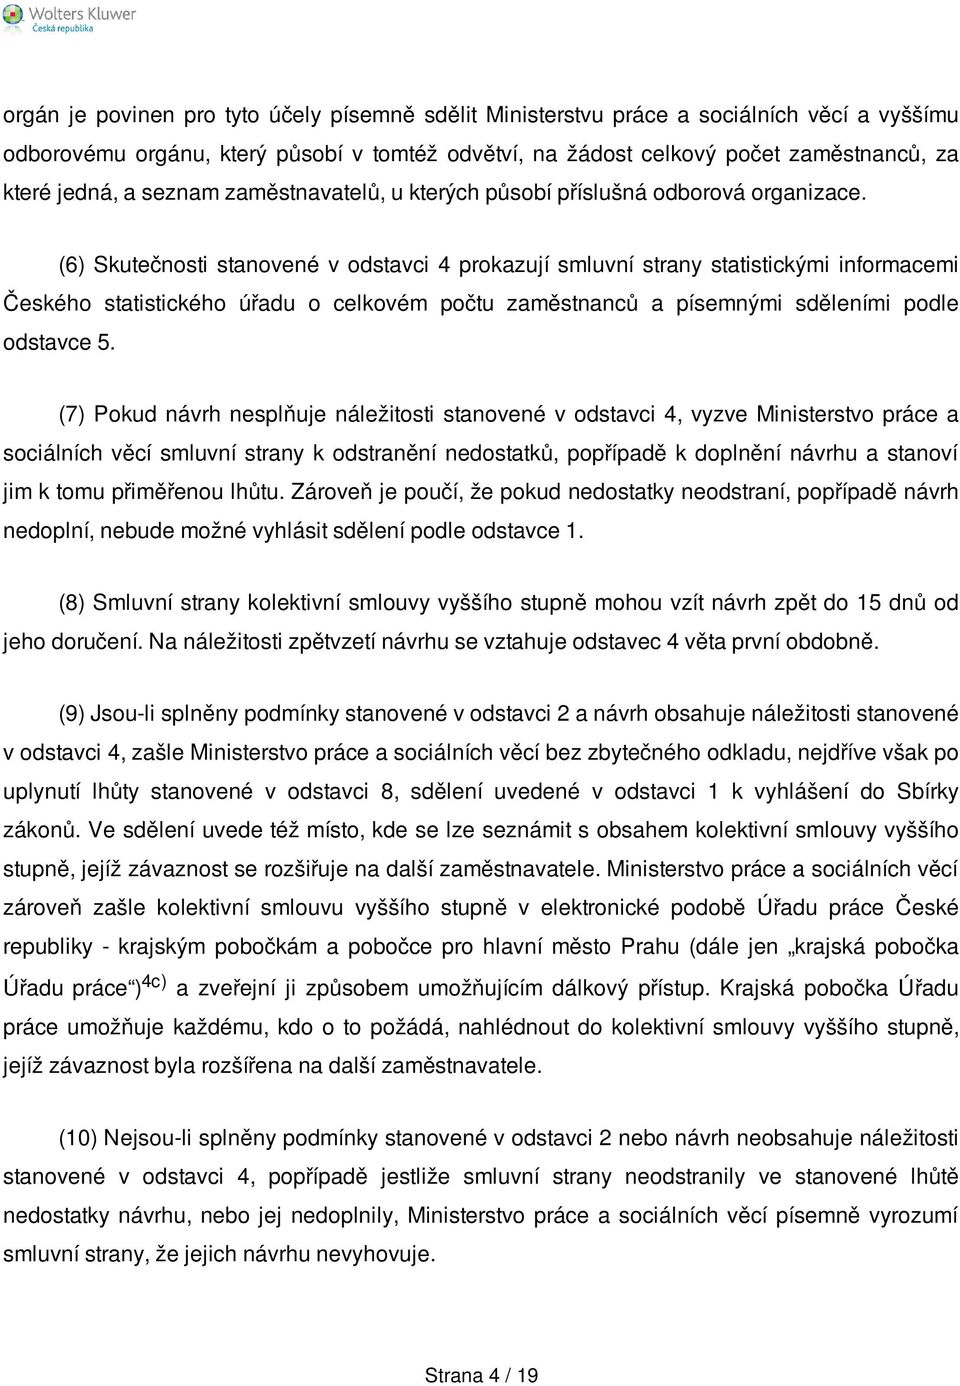 (6) Skutečnosti stanovené v odstavci 4 prokazují smluvní strany statistickými informacemi Českého statistického úřadu o celkovém počtu zaměstnanců a písemnými sděleními podle odstavce 5.